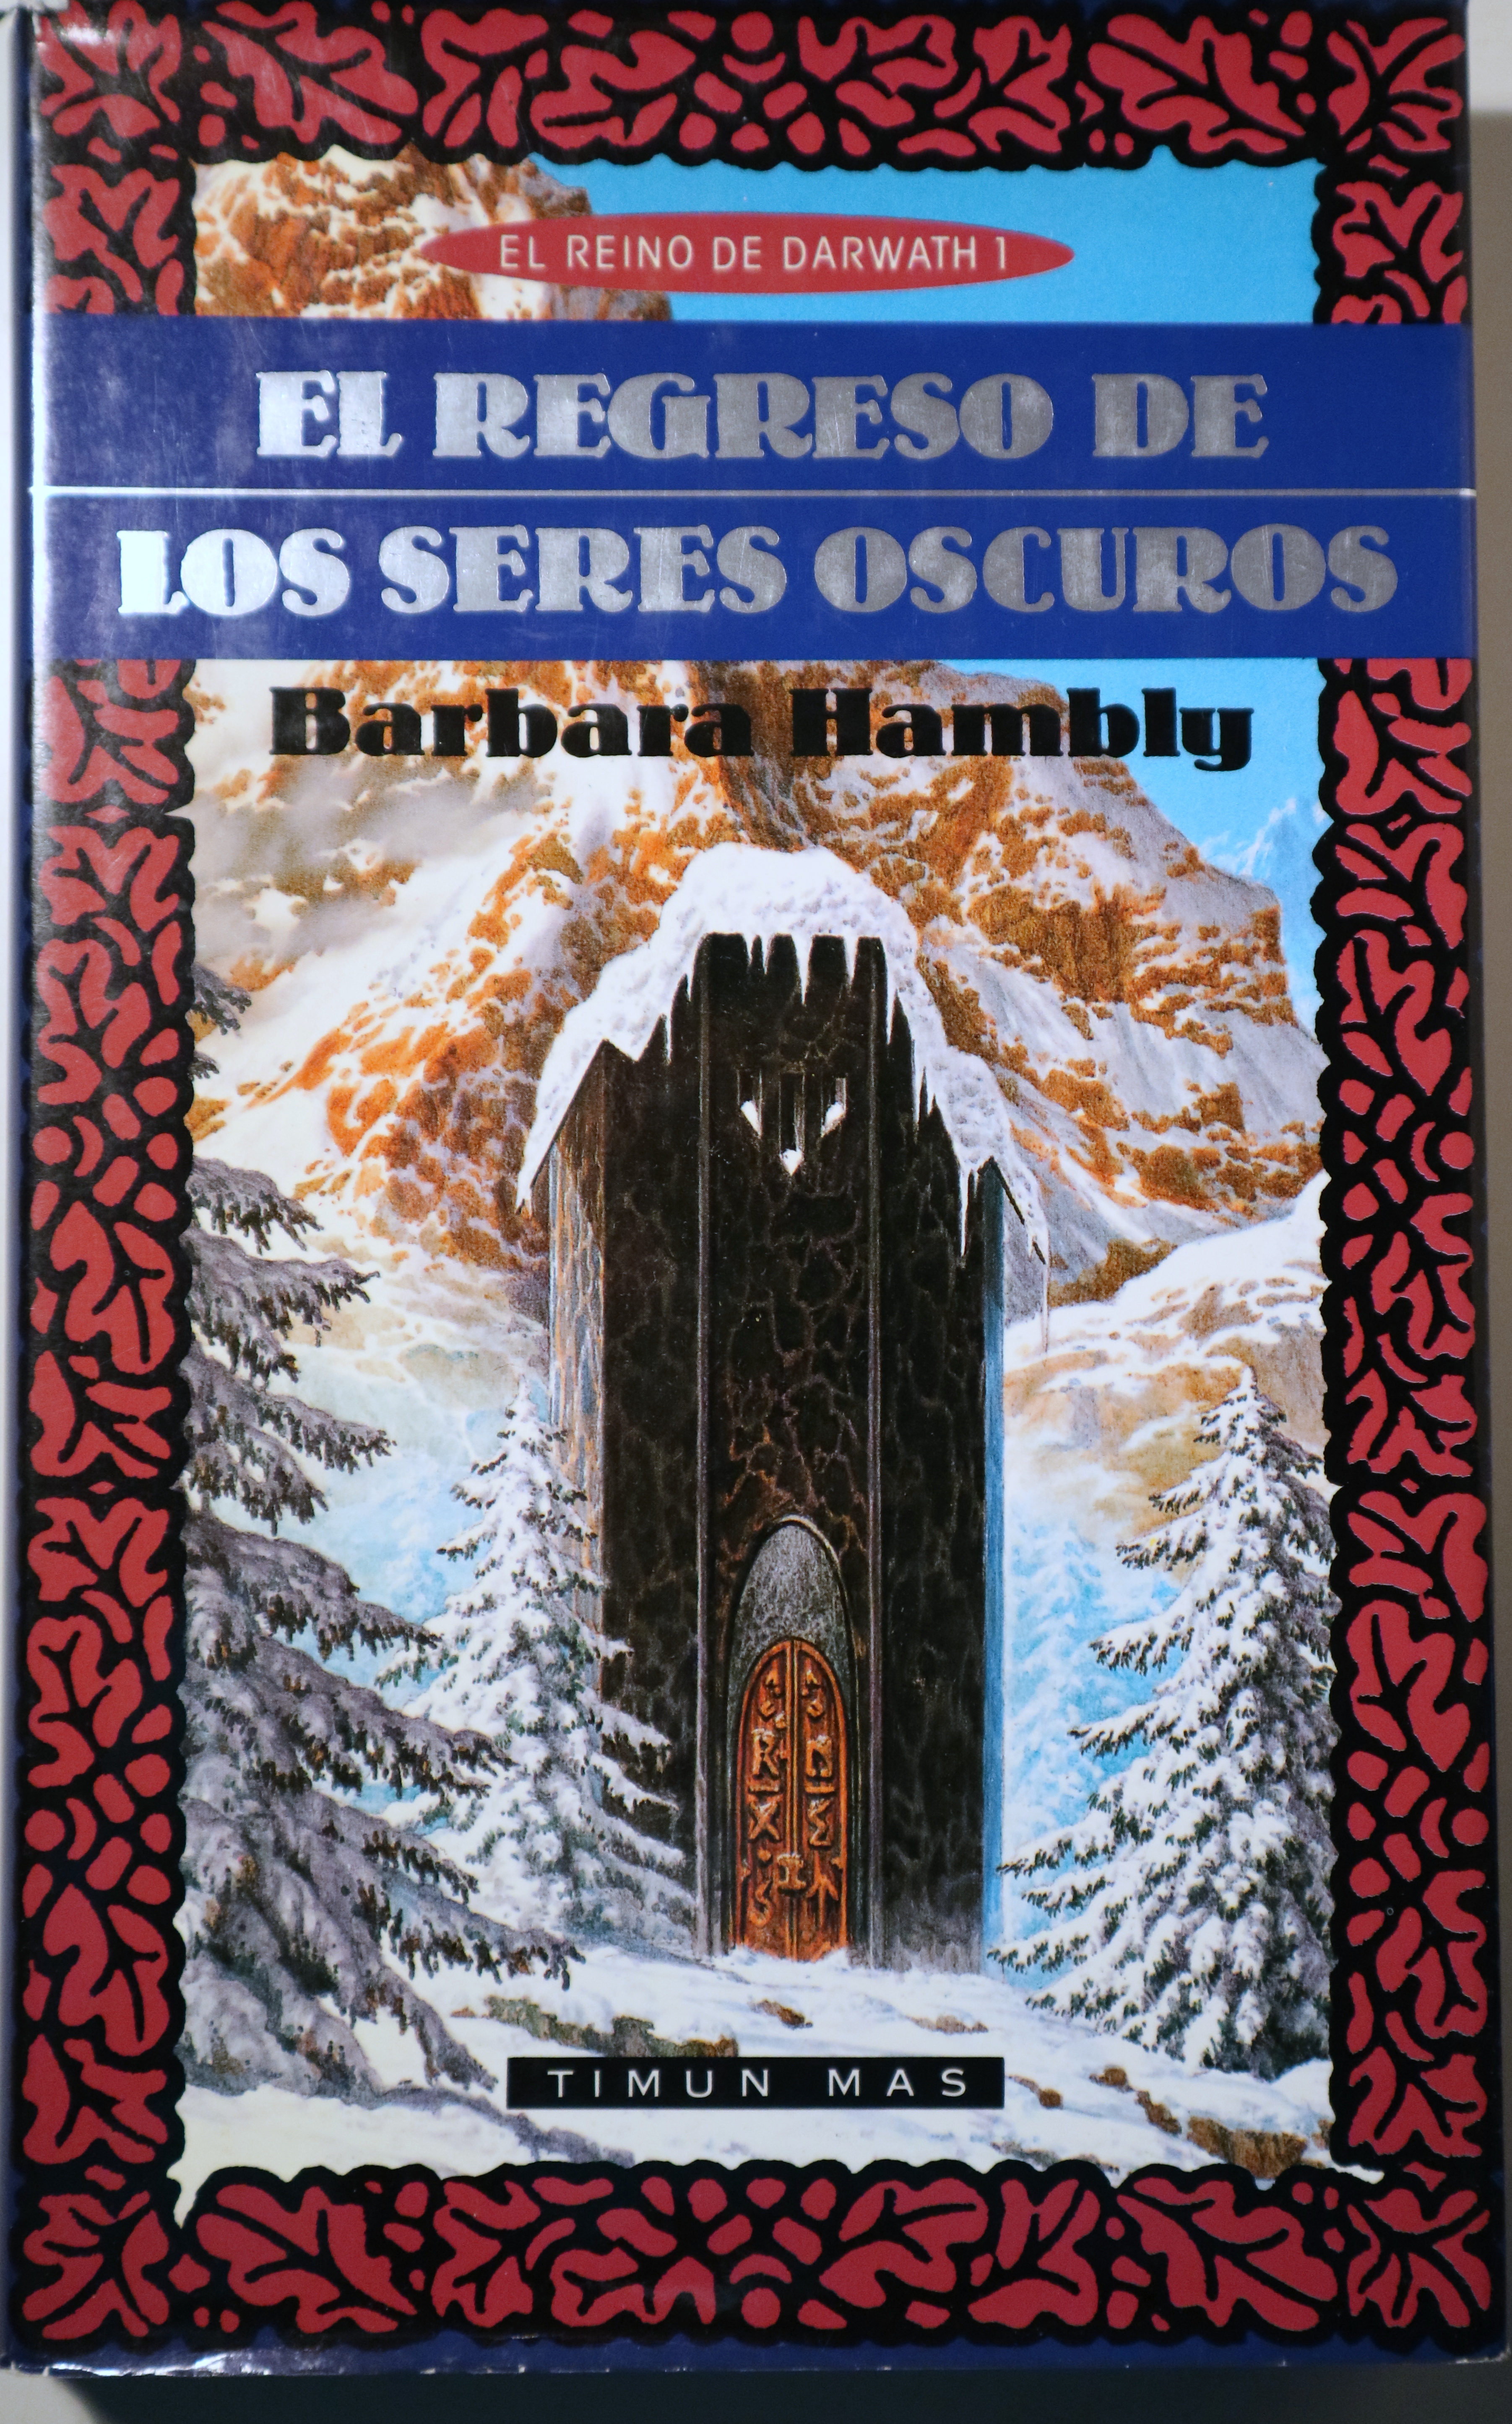 EL REGRESO DE LOS SERES OSCUROS - Barcelona 1991